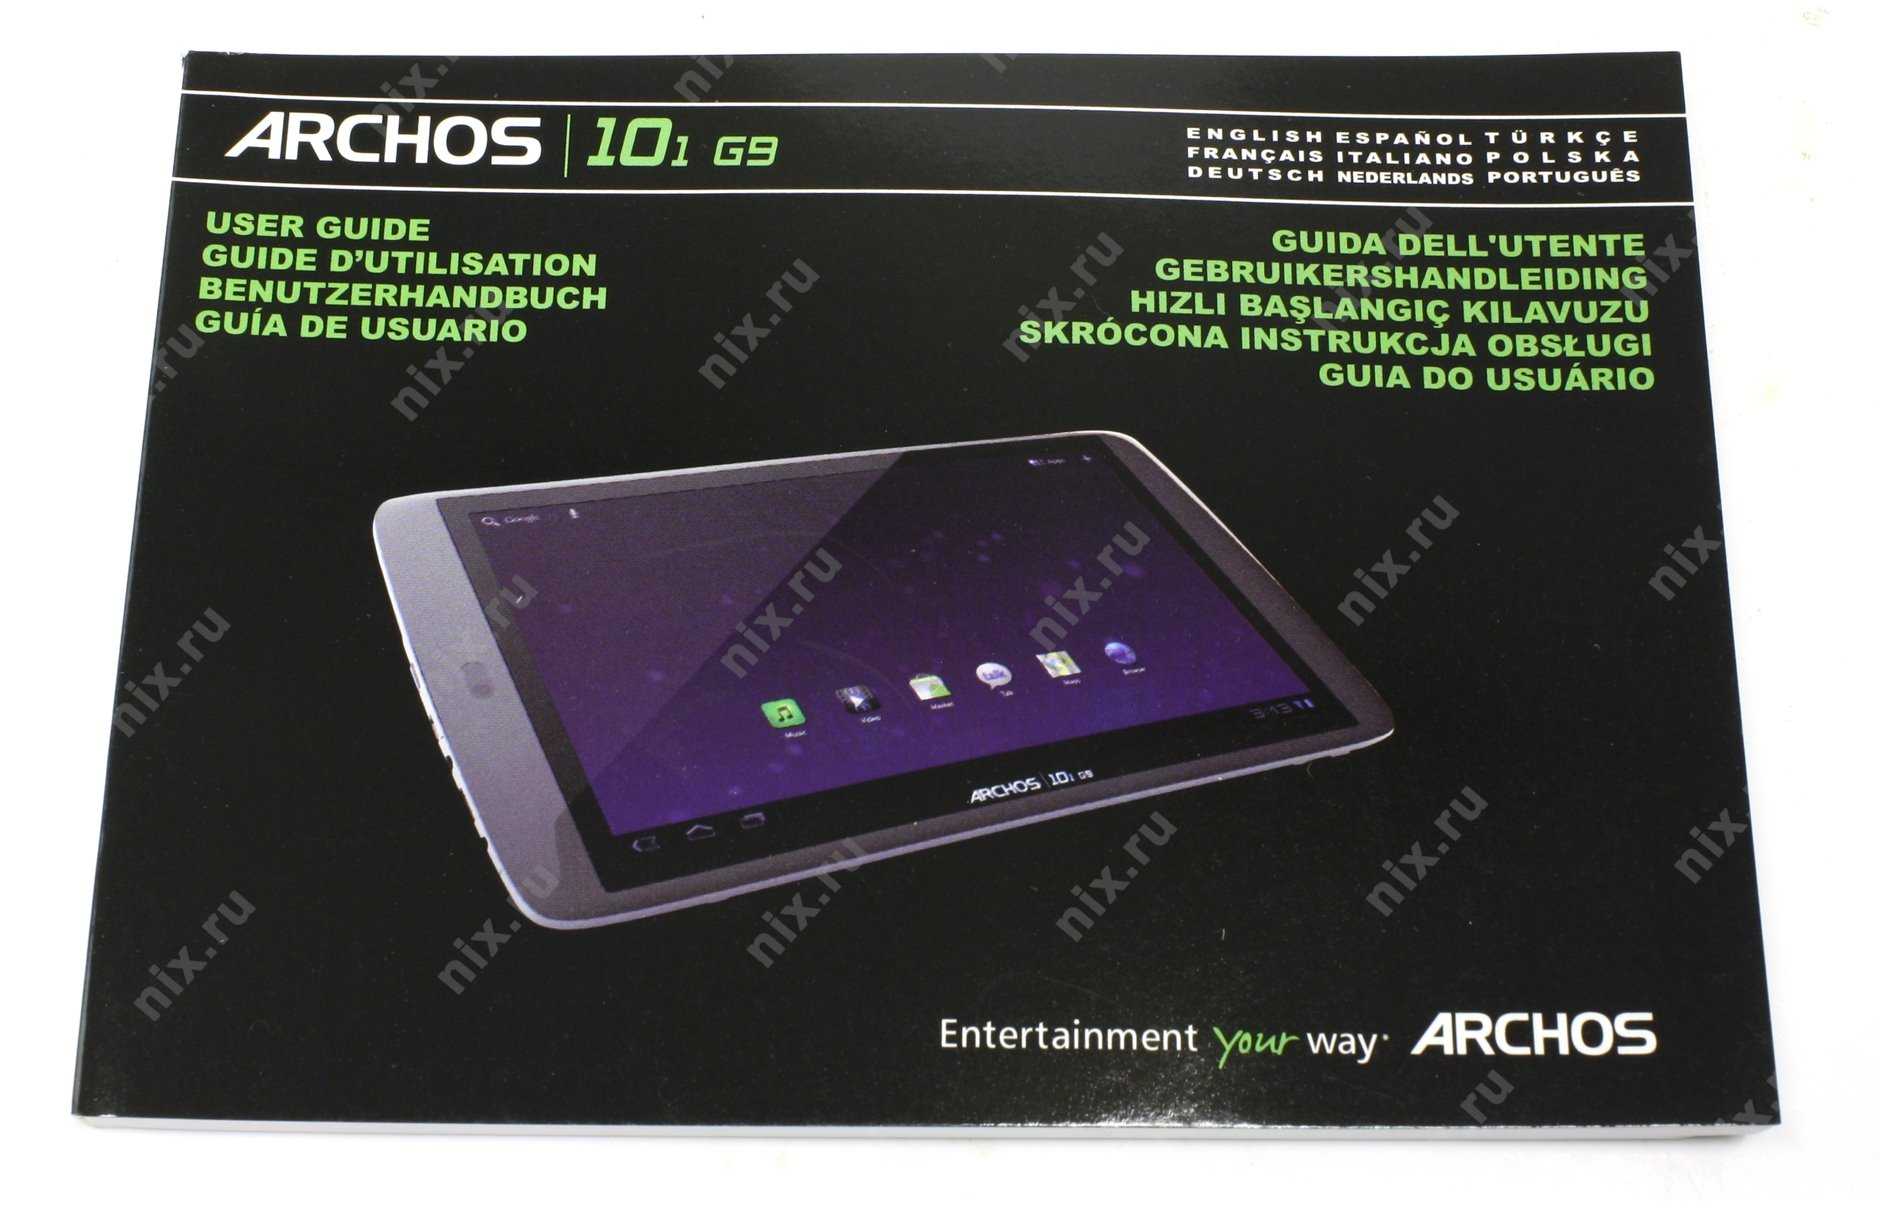 Планшет archos 101 g9 8 гб wifi серый — купить, цена и характеристики, отзывы